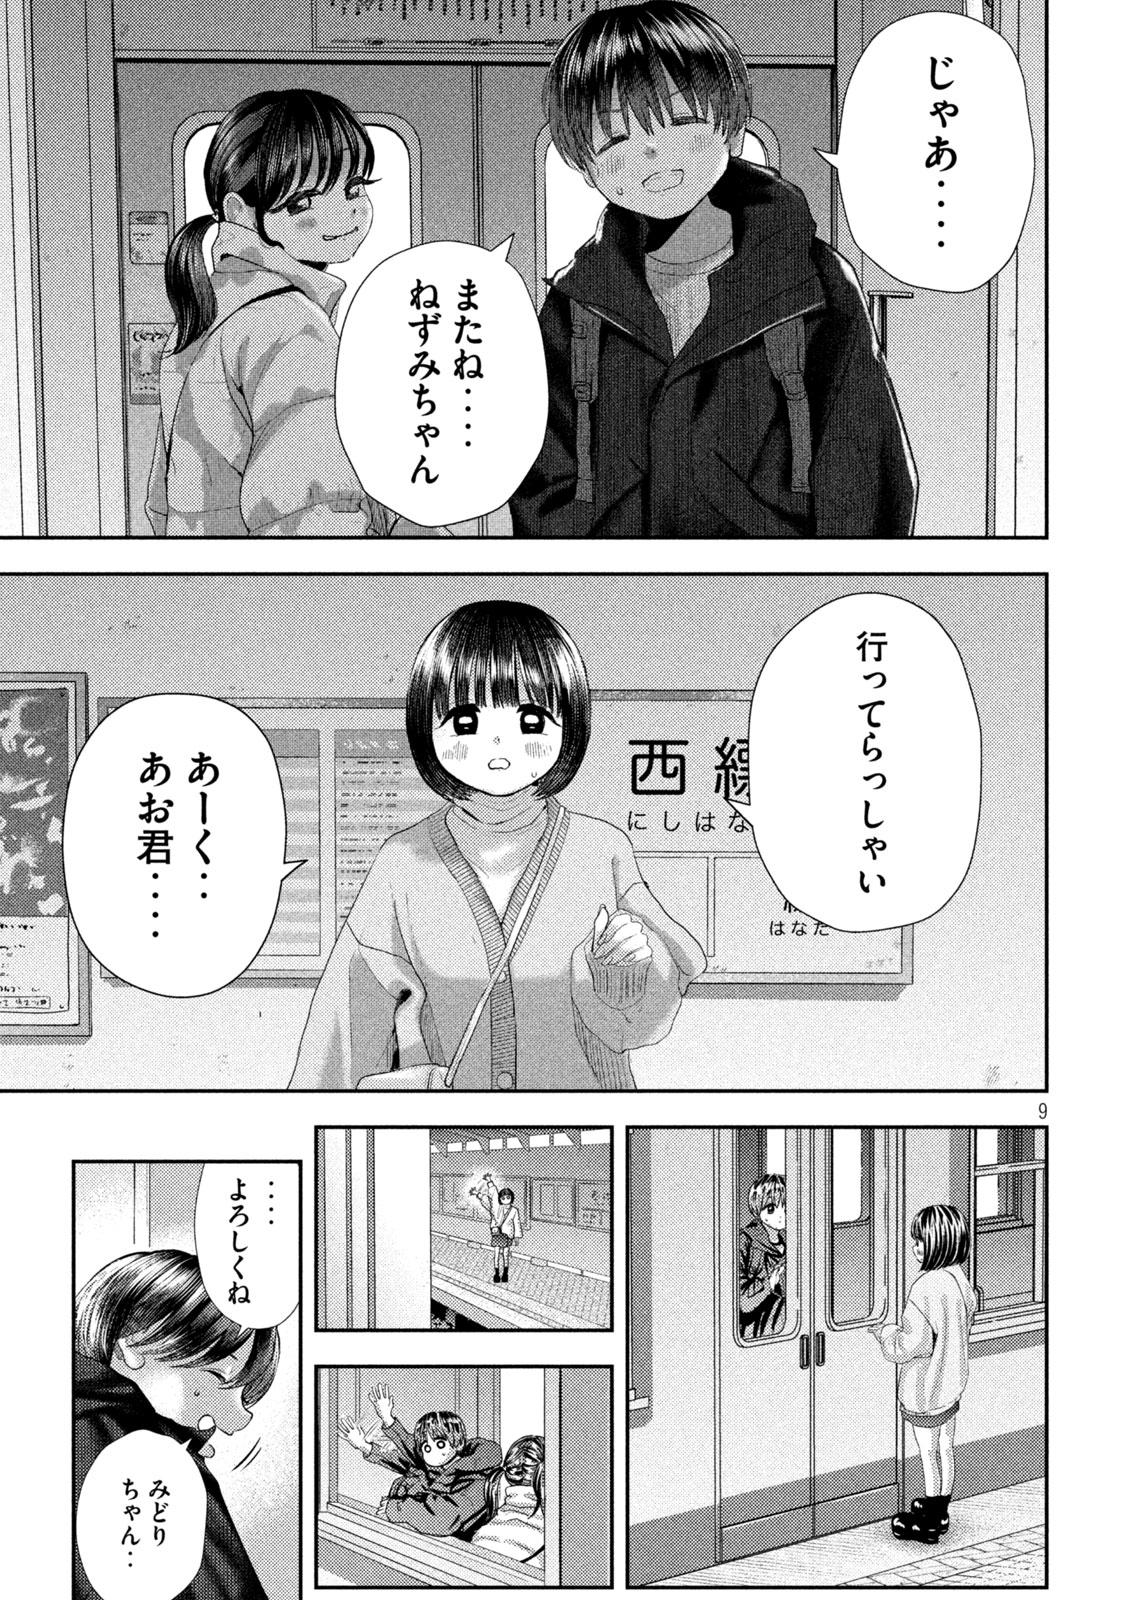 Nezumi no Koi - Chapter 31 - Page 9